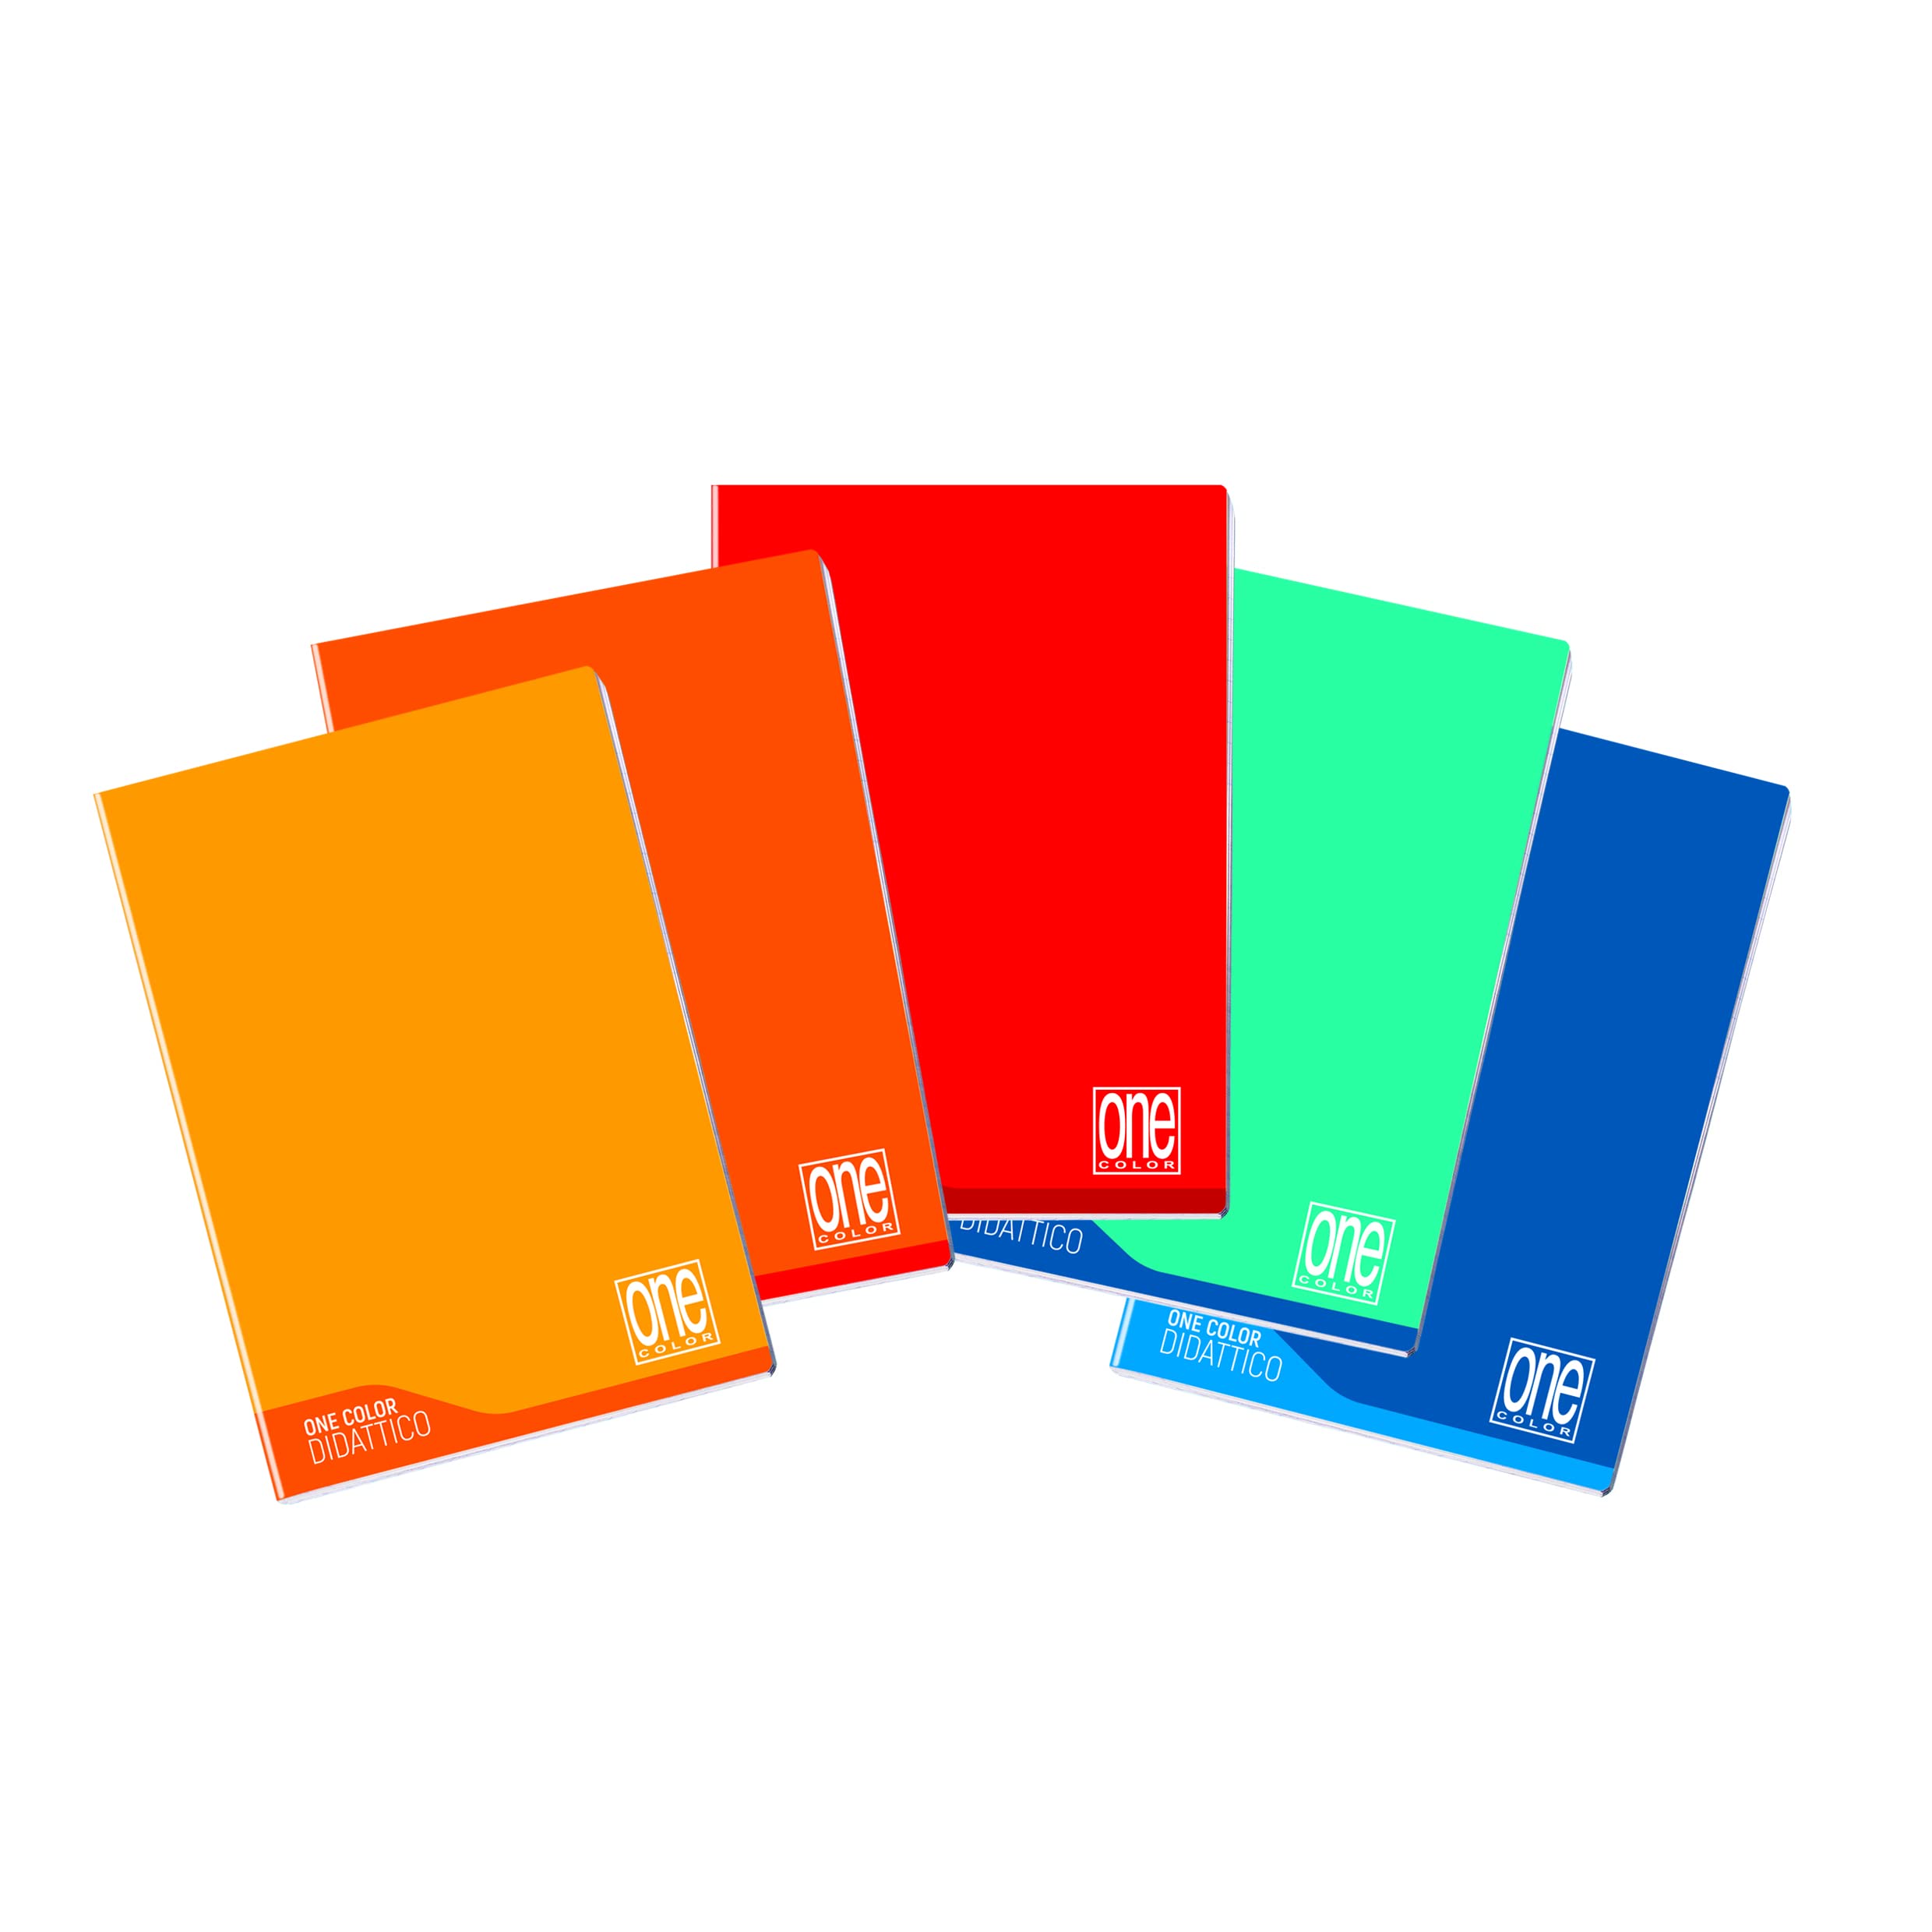 Quaderni One Color Blasetti didattico f. To a4 18+1 rigo di 1a per disgrafia  - Confezione da 6 PZ - 7041